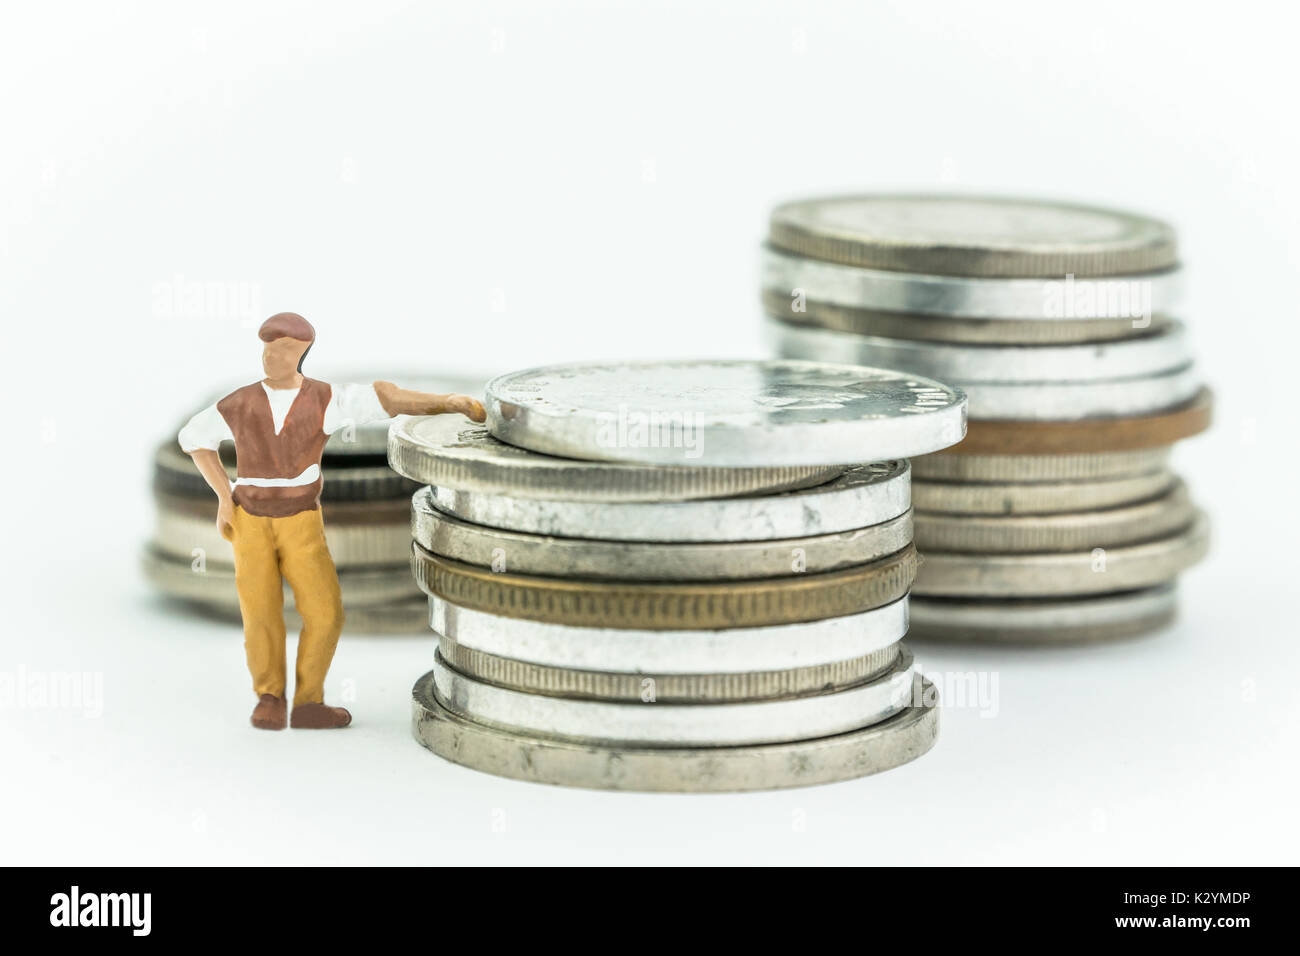 Miniatura de hombre junto a unas monedas, concepto economía Foto de stock